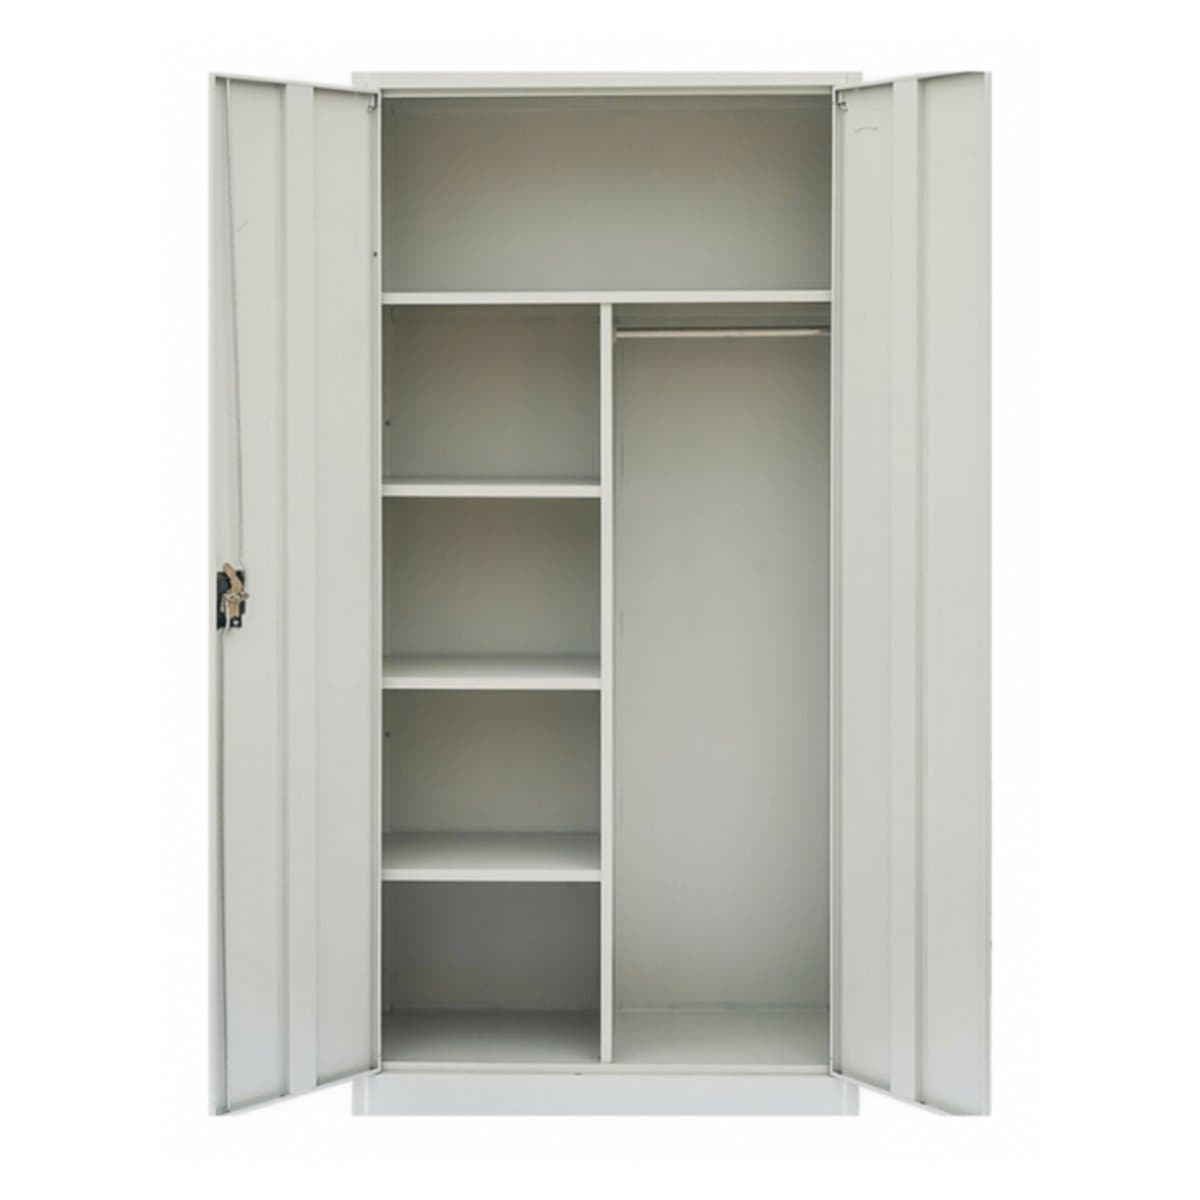 Rexel Domestic Cupboard, 183x91.8x48 cm, Swing Door, Grey